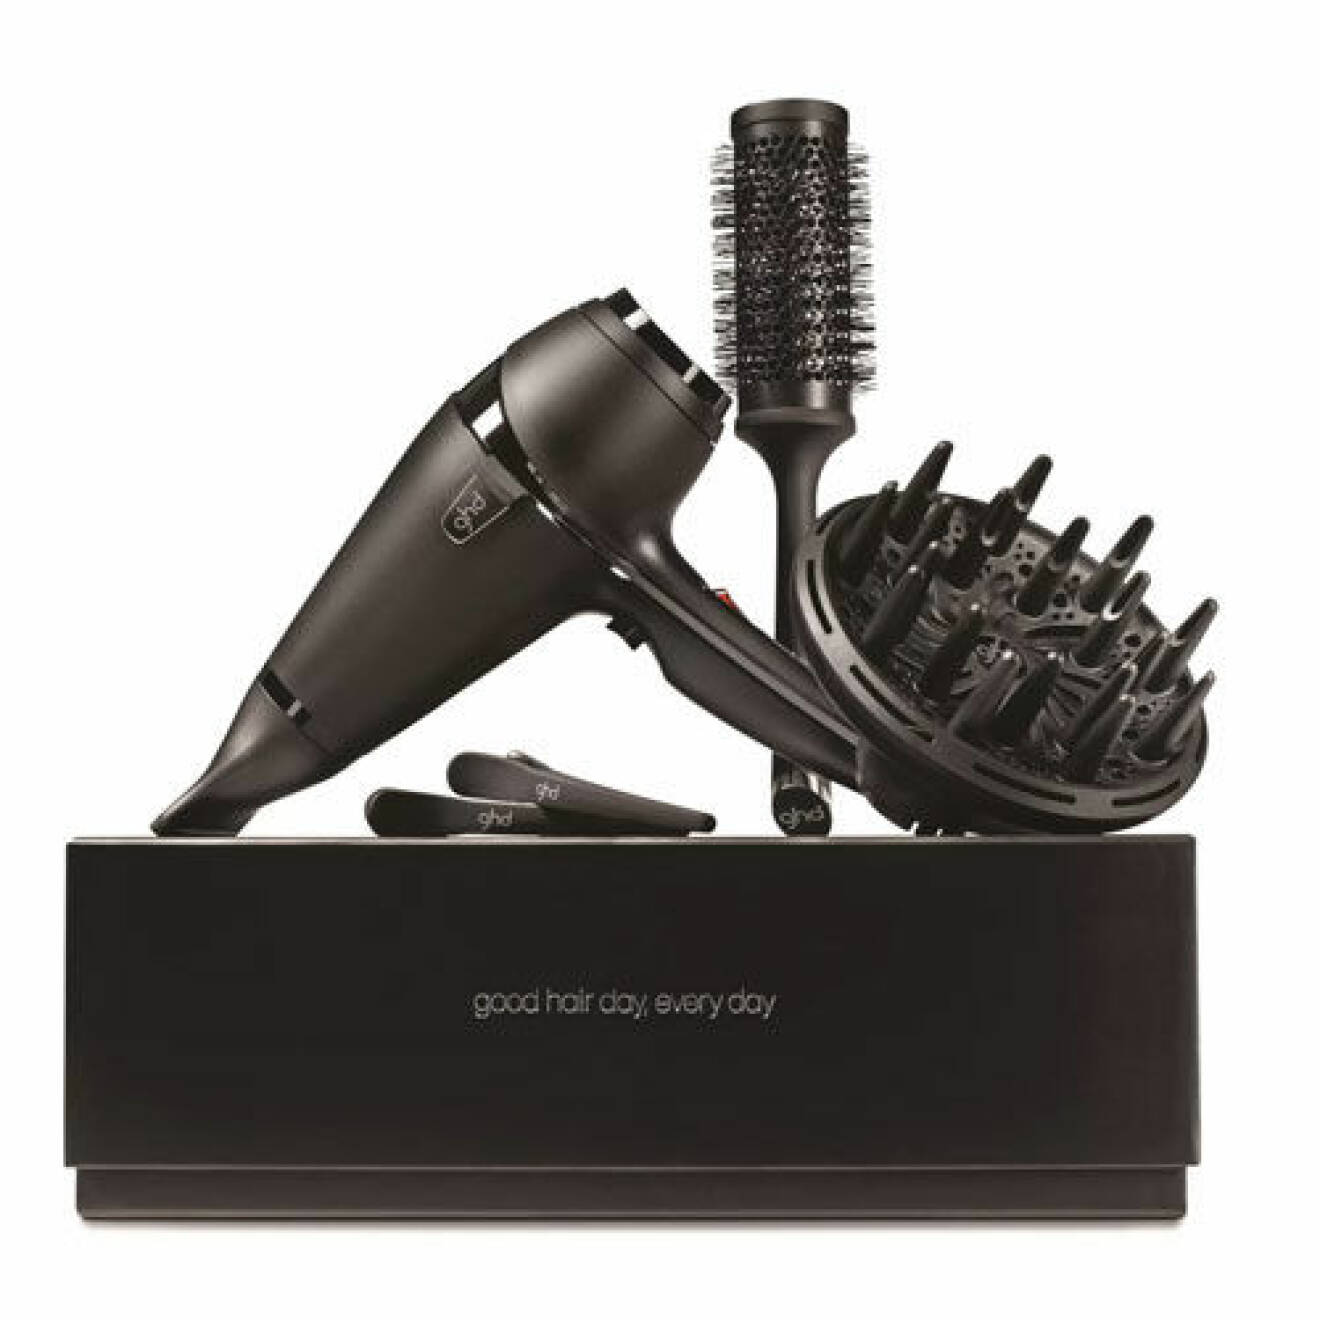 Ghd Air hair dryer kit